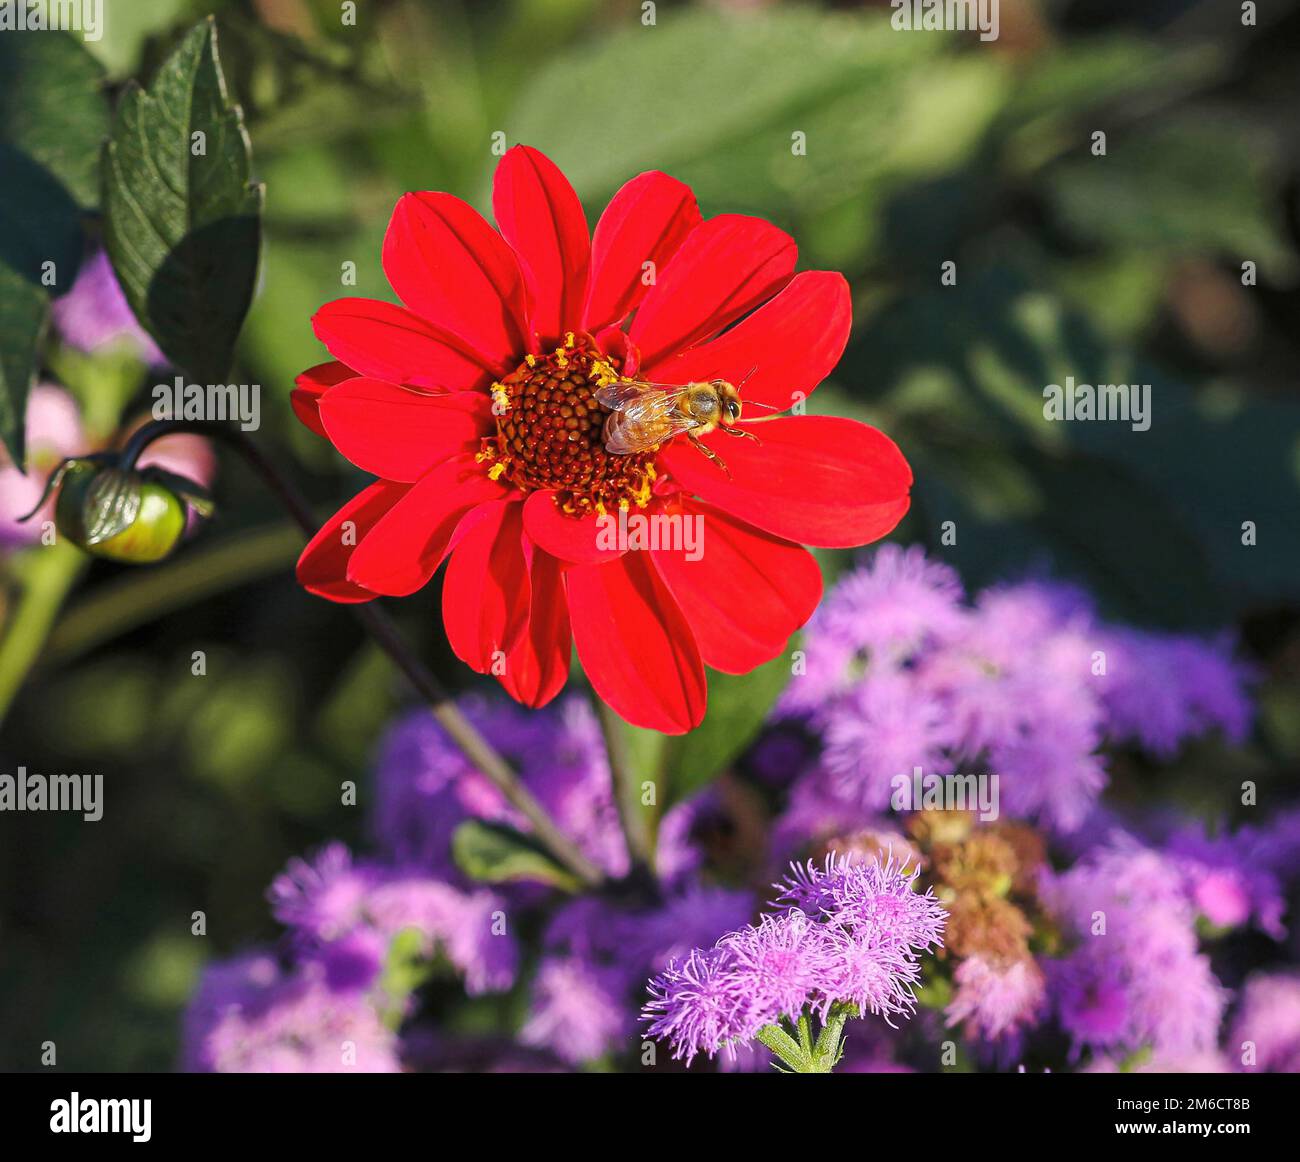 Un'ape dorata e di colore chiaro vola fuori da un grazioso fiore rosso di Zinnia sfalsato dai fiori di Ageratum o di filo di seta colorati di lavanda. Foto Stock